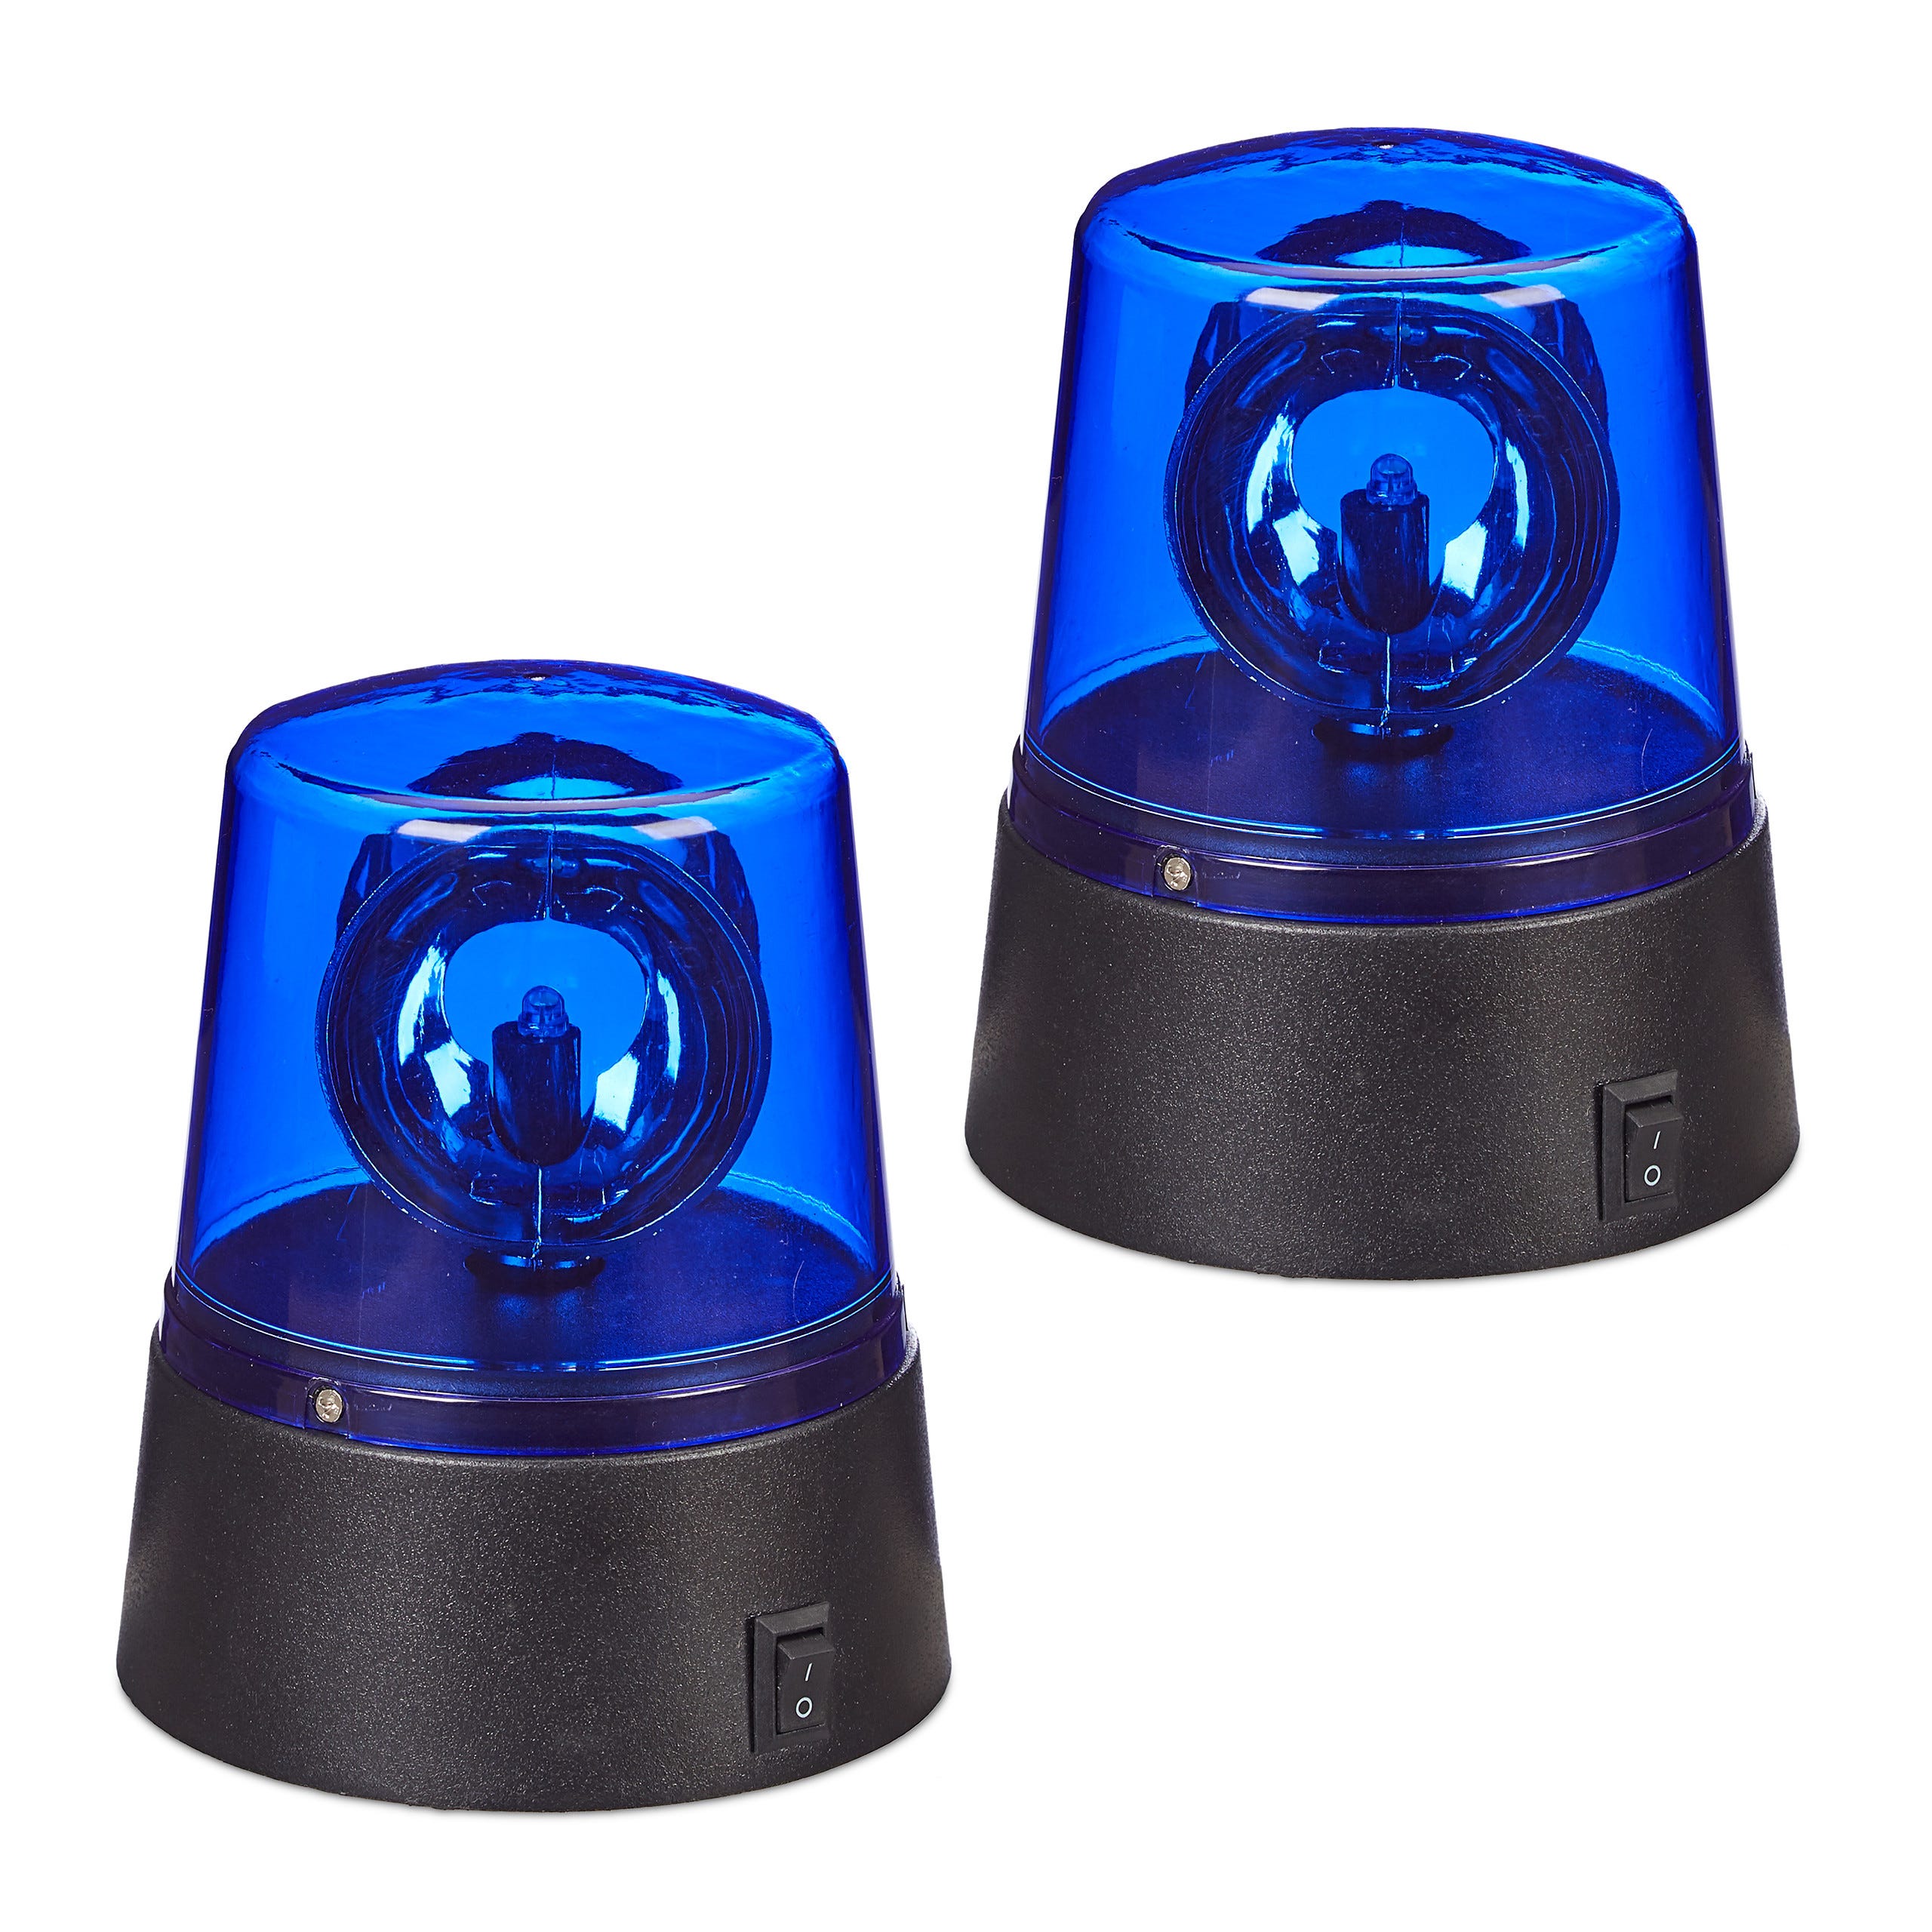 2x Polizia Party, LED Lampeggiante Blu con Riflettore Girevole a Batteria,  senza Fili, posizionabile ovunque, blu